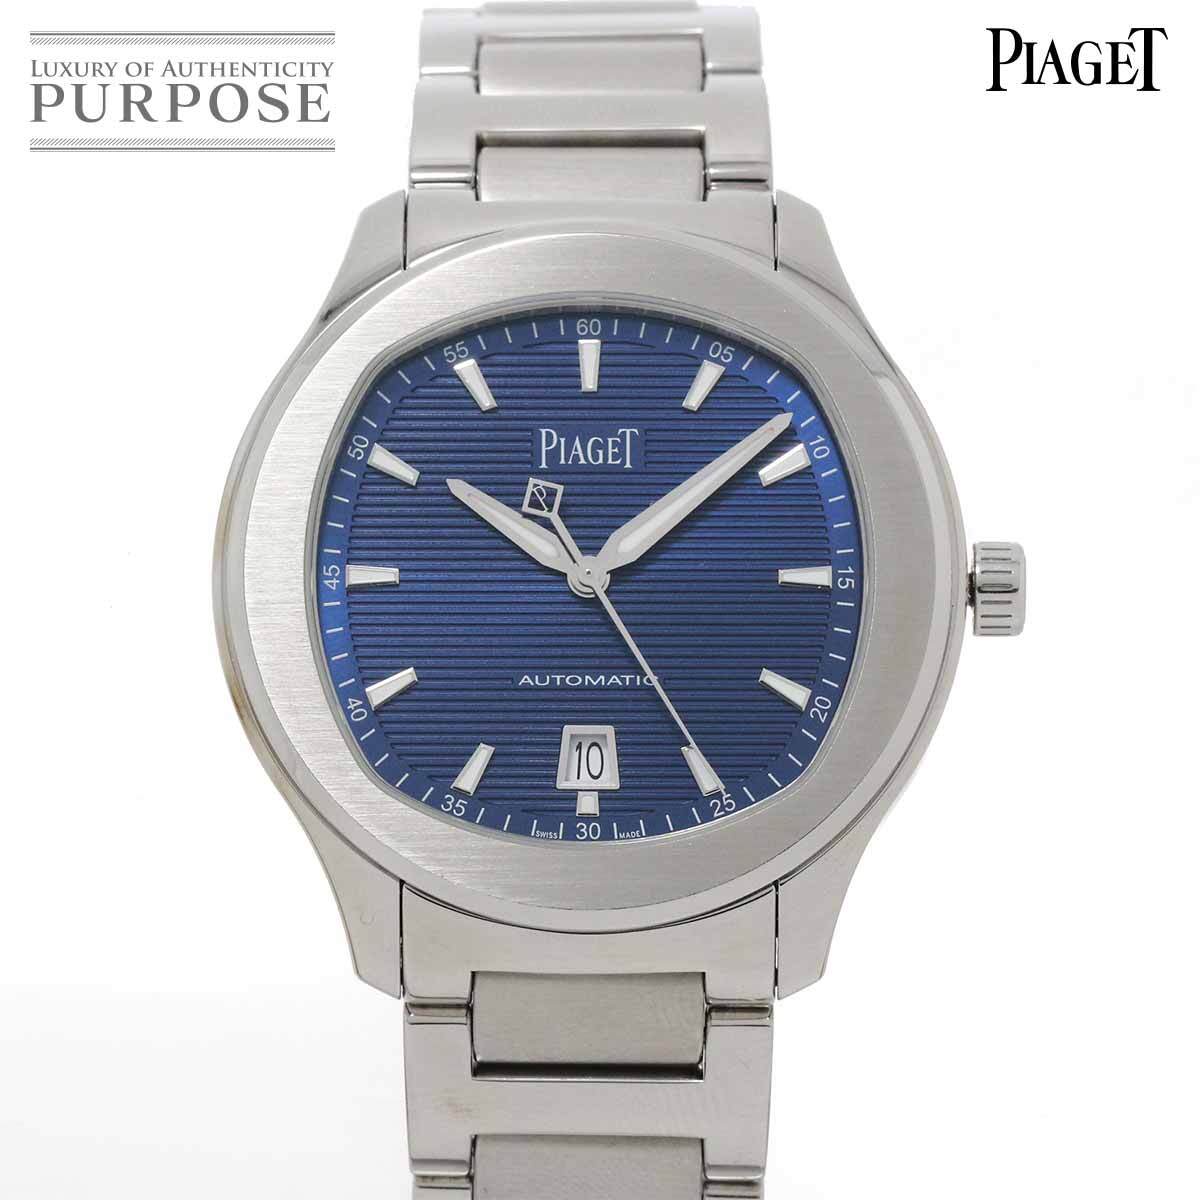 新品同様 ピアジェ PIAGET ポロ S GOA41002 メンズ 腕時計 デイト ブルー 文字盤 裏スケルトン 自動巻き ウォッチ Polo 90219952